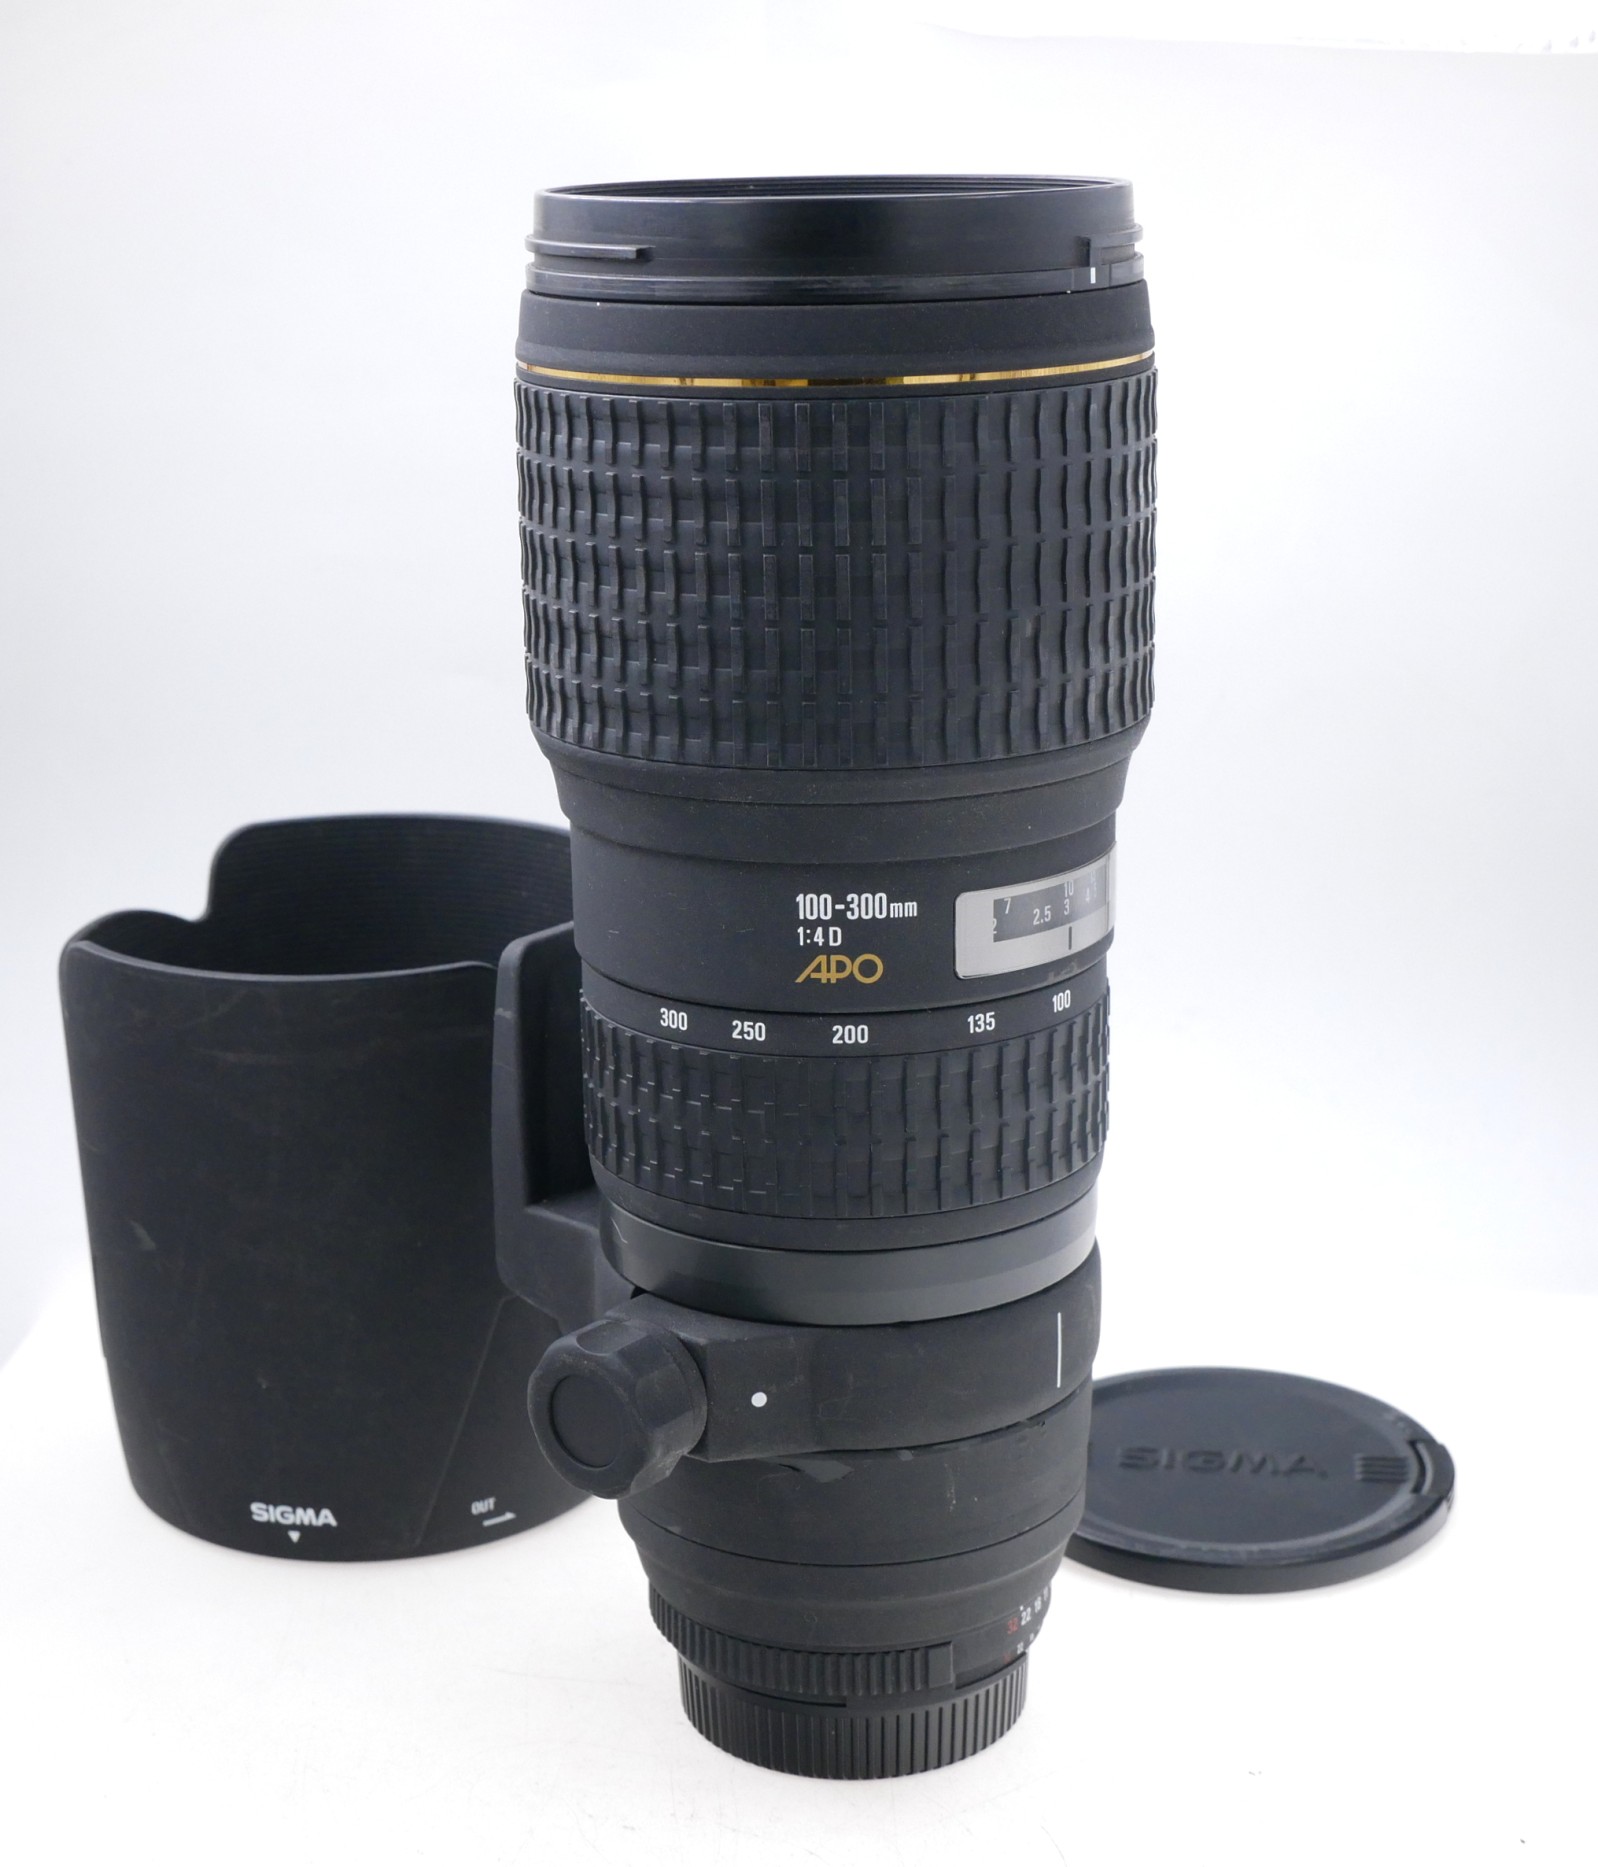 Sigma AF 100-300mm F4 D APO HSM IF Lens in Nikon Mount